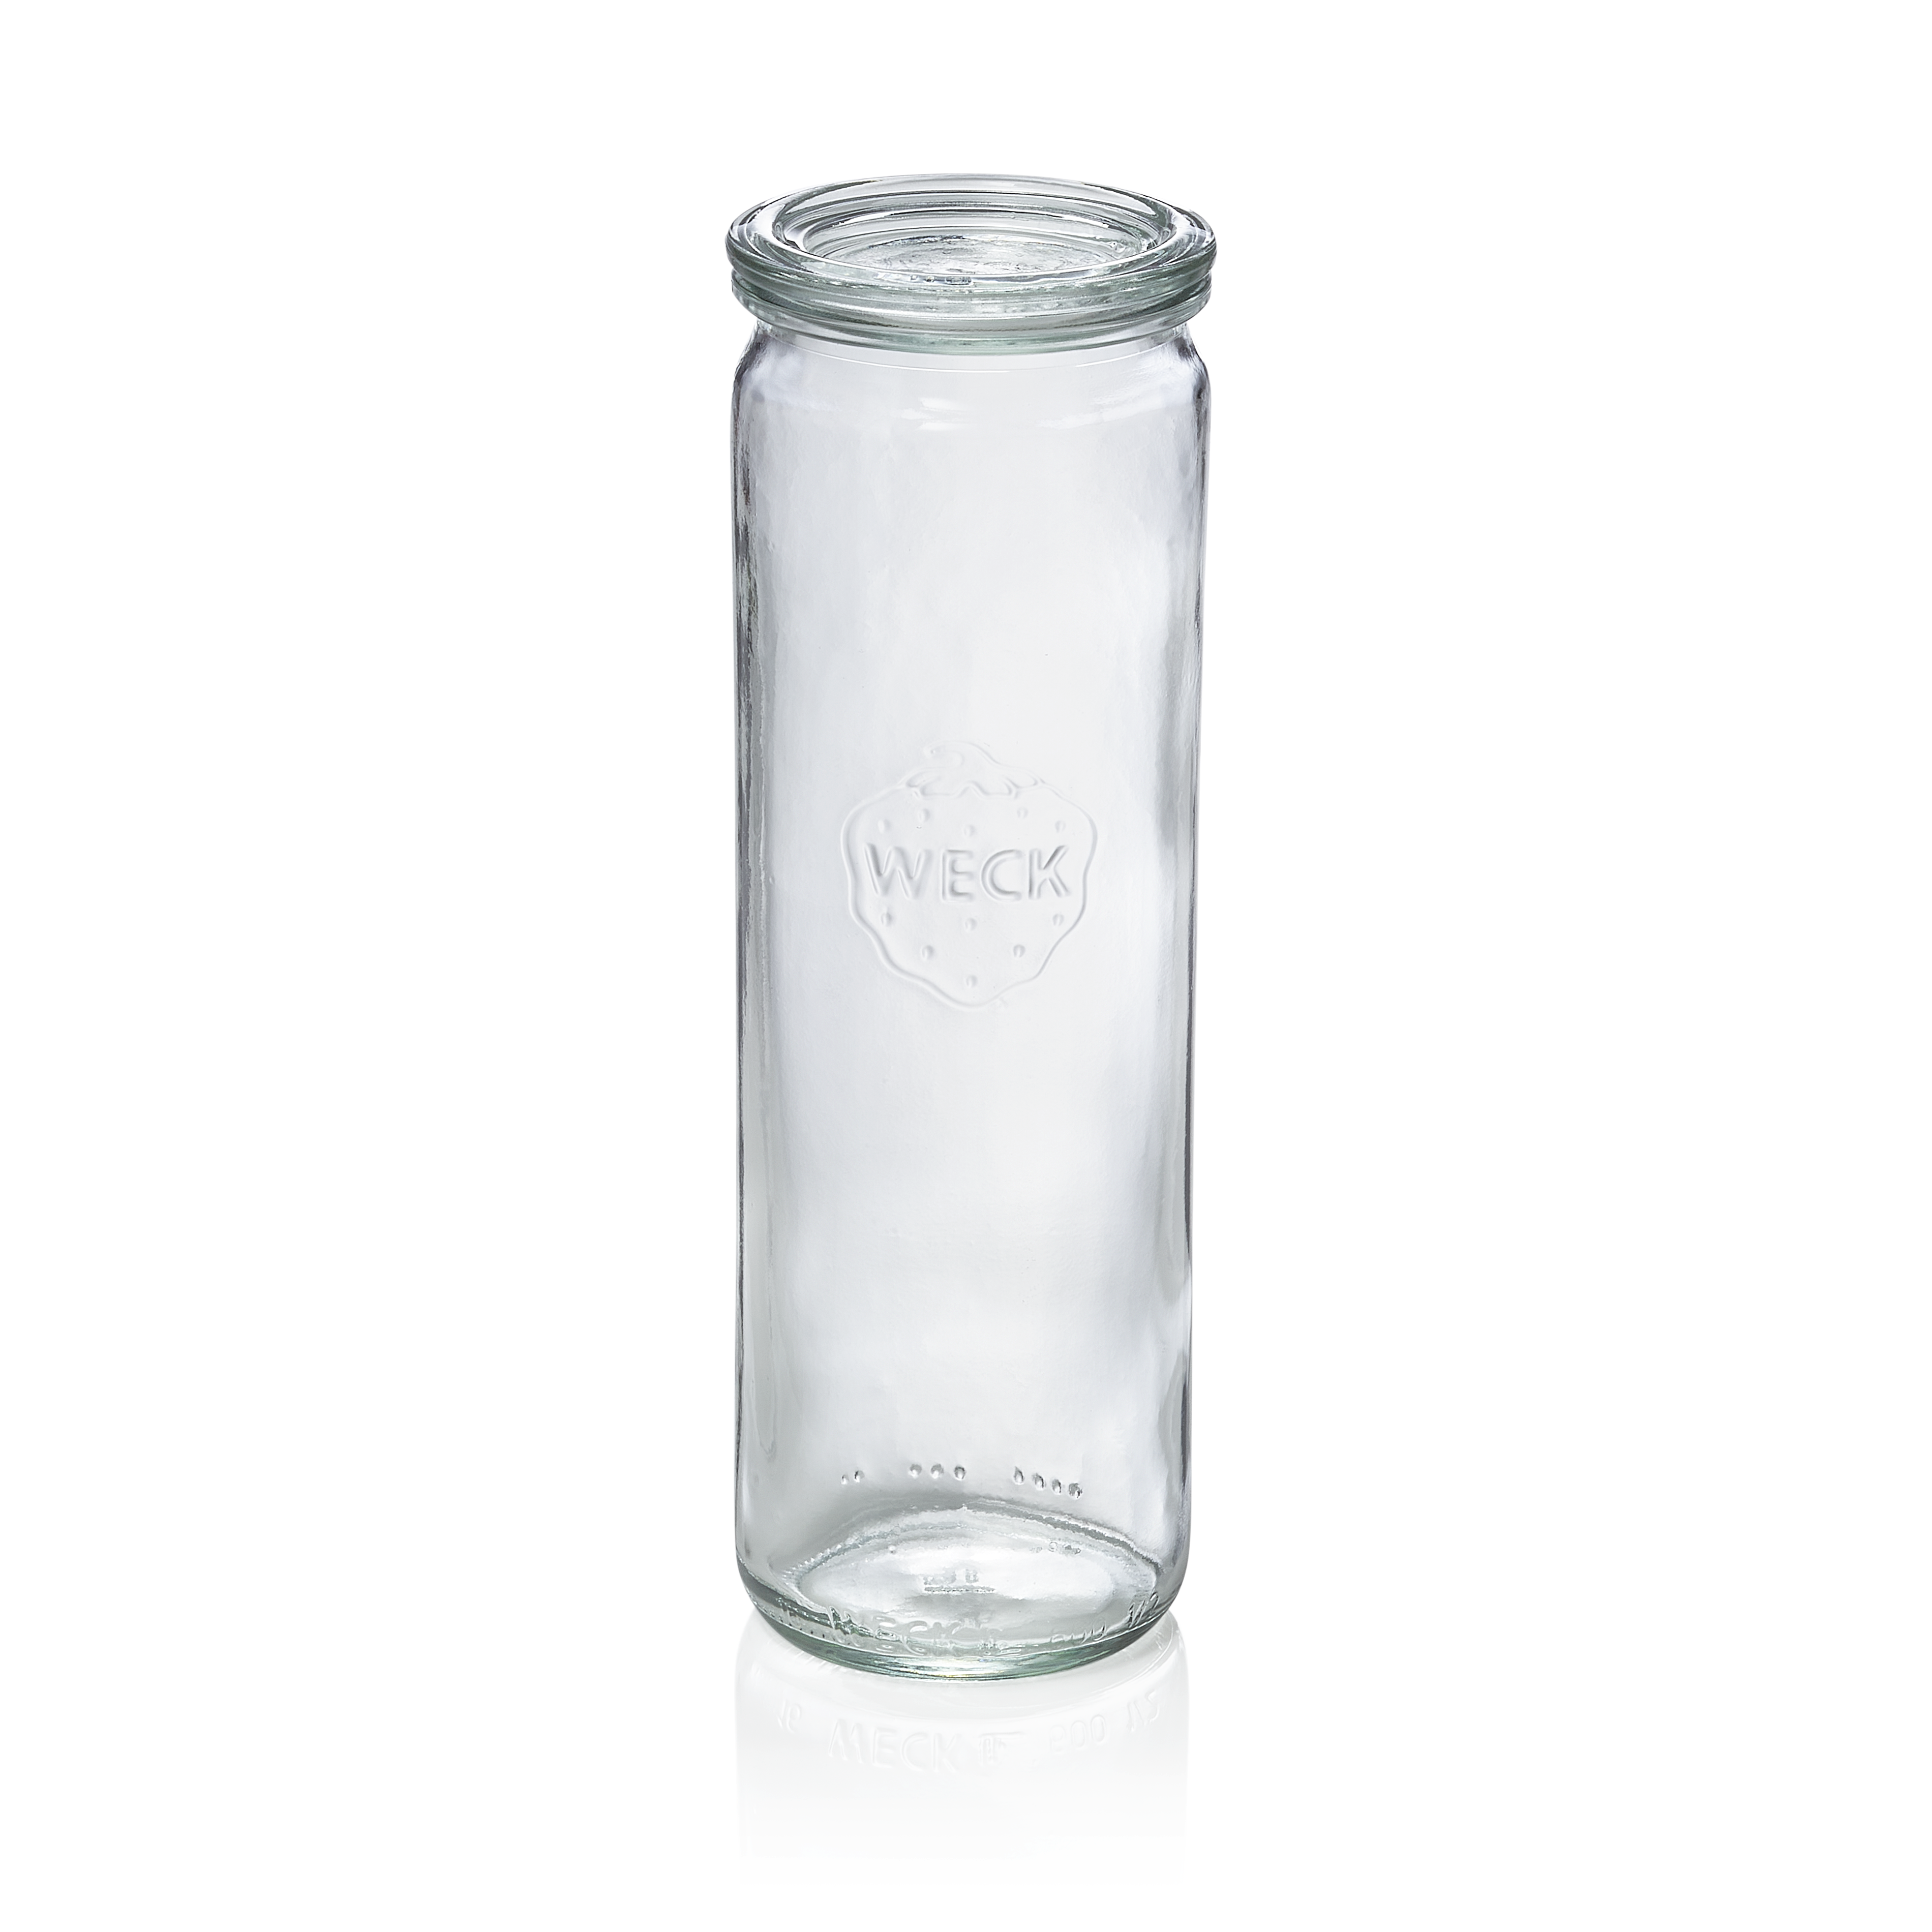 WAS Zylinderglas mit Deckel Weck, 0,60 ltr., Set á 6 Stück, Glas